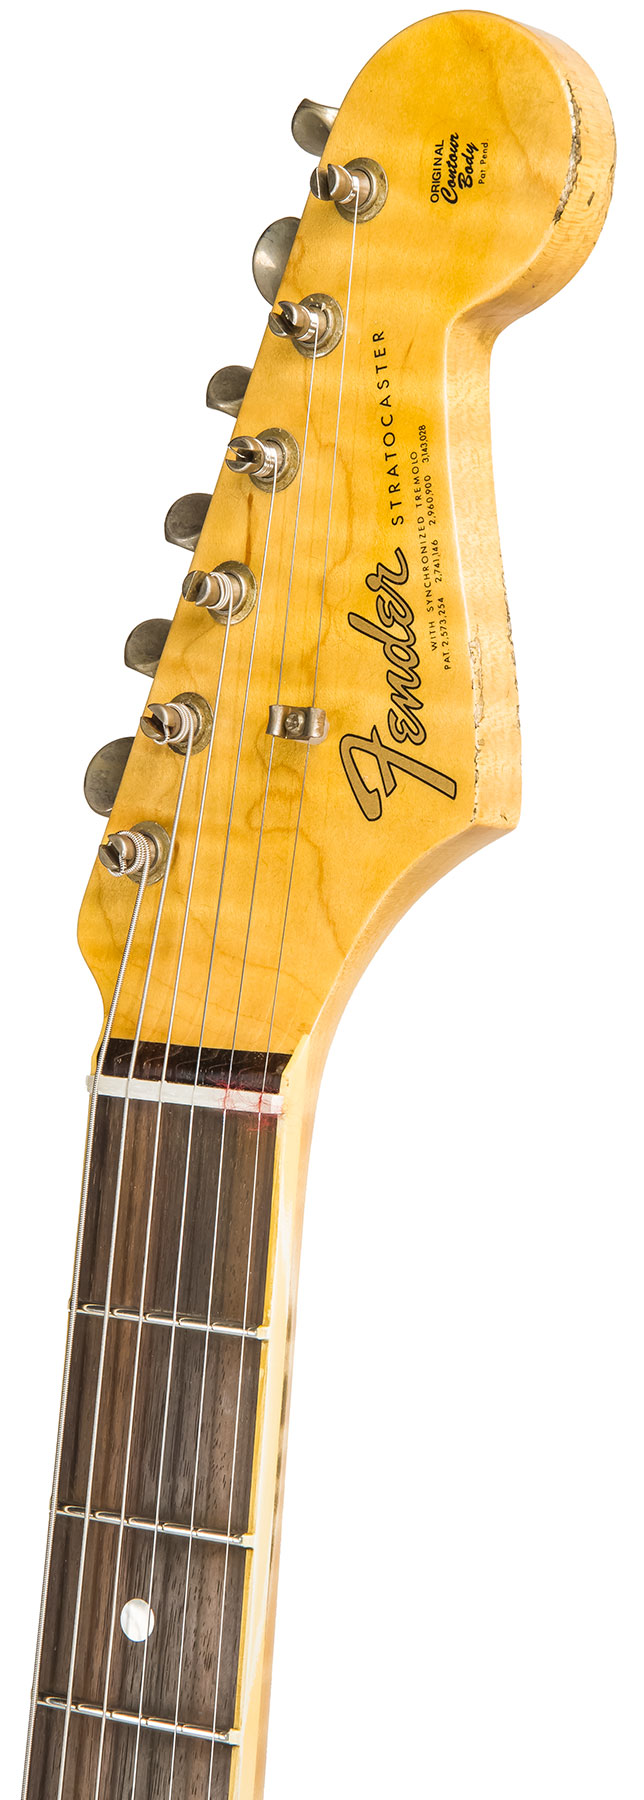 Fender Custom Shop Strat 1965 Ltd Usa Rw #cz548544 - Relic Daphne Blue Sparkle - Elektrische gitaar in Str-vorm - Variation 5